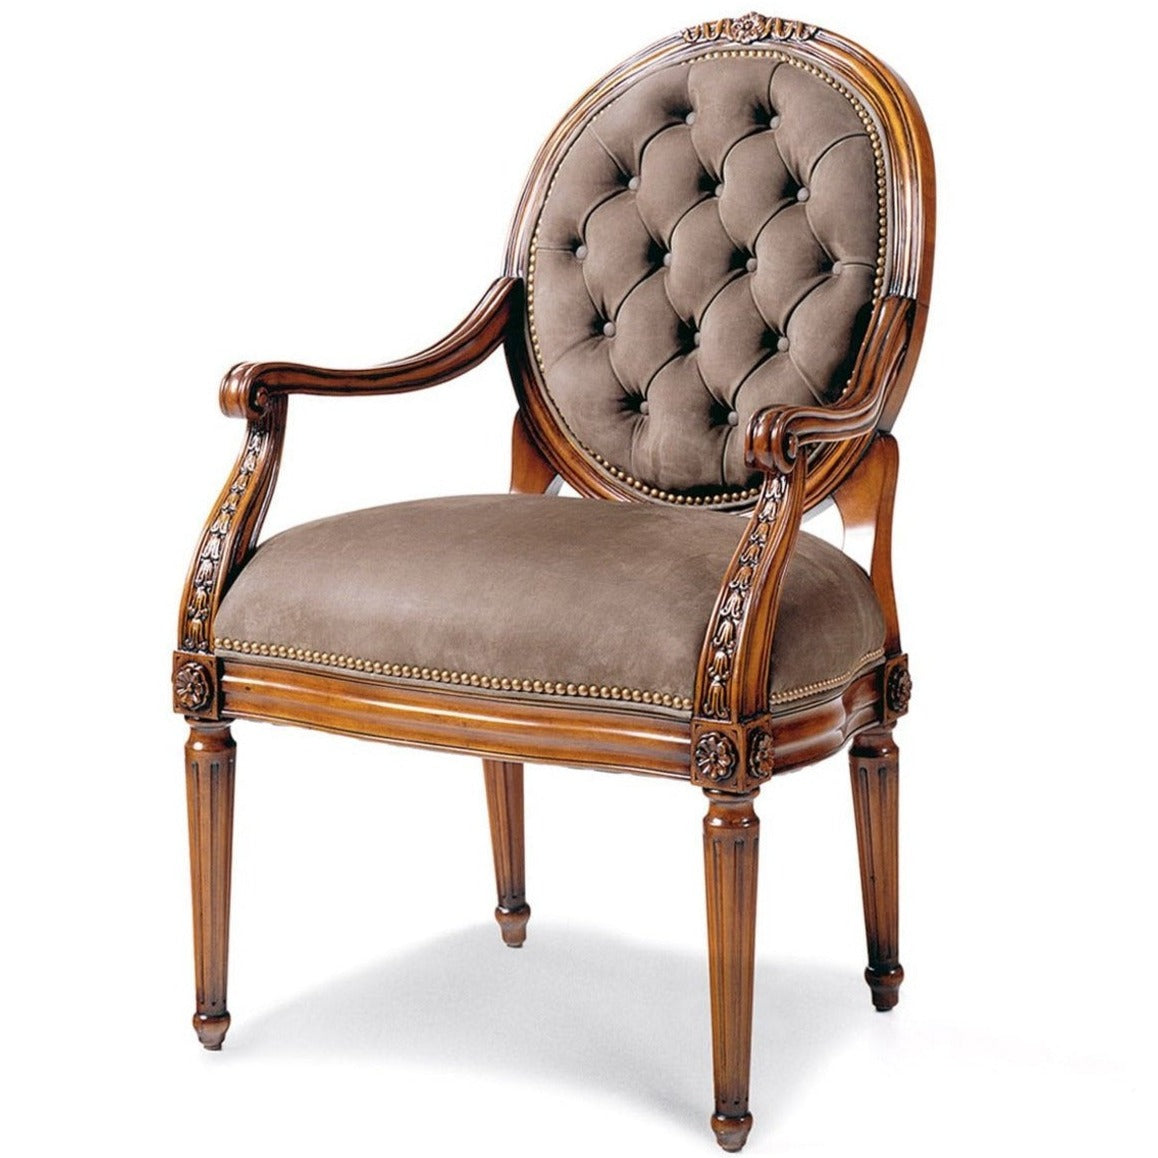 Blair Tufted Chair - Jordans Interiors